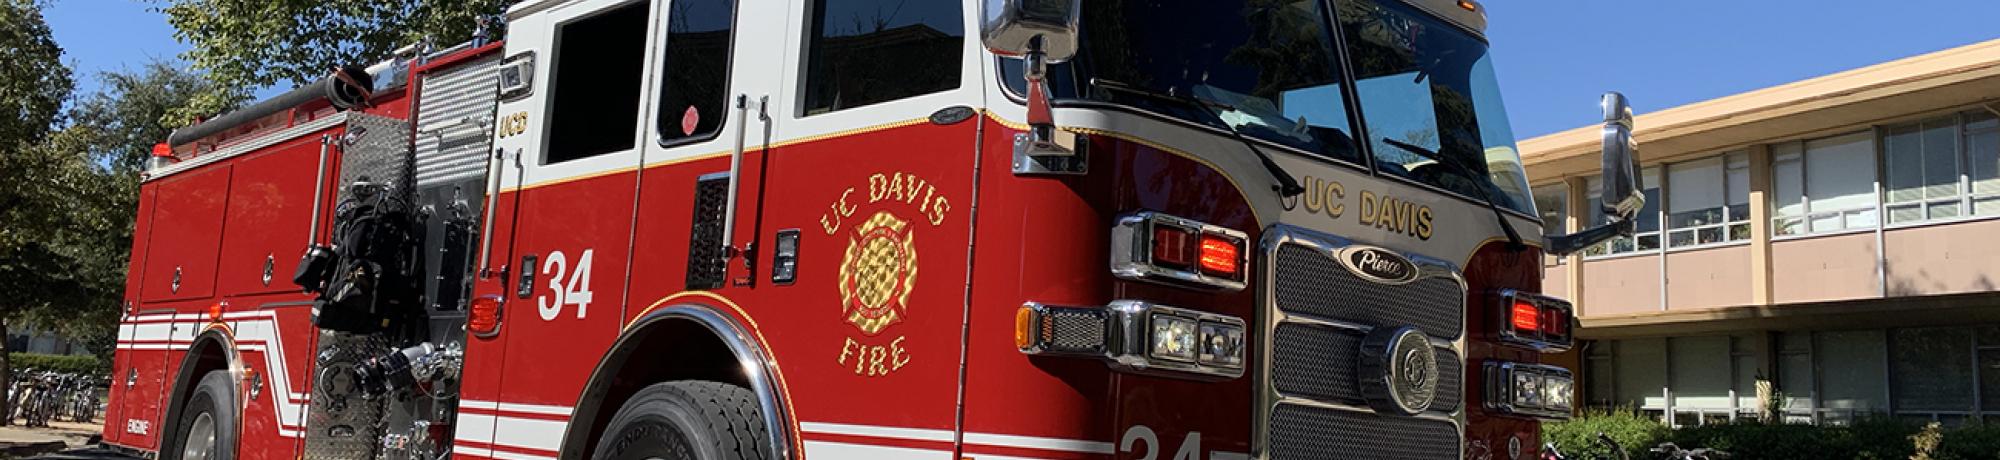 UC Davis Fire Engine 34